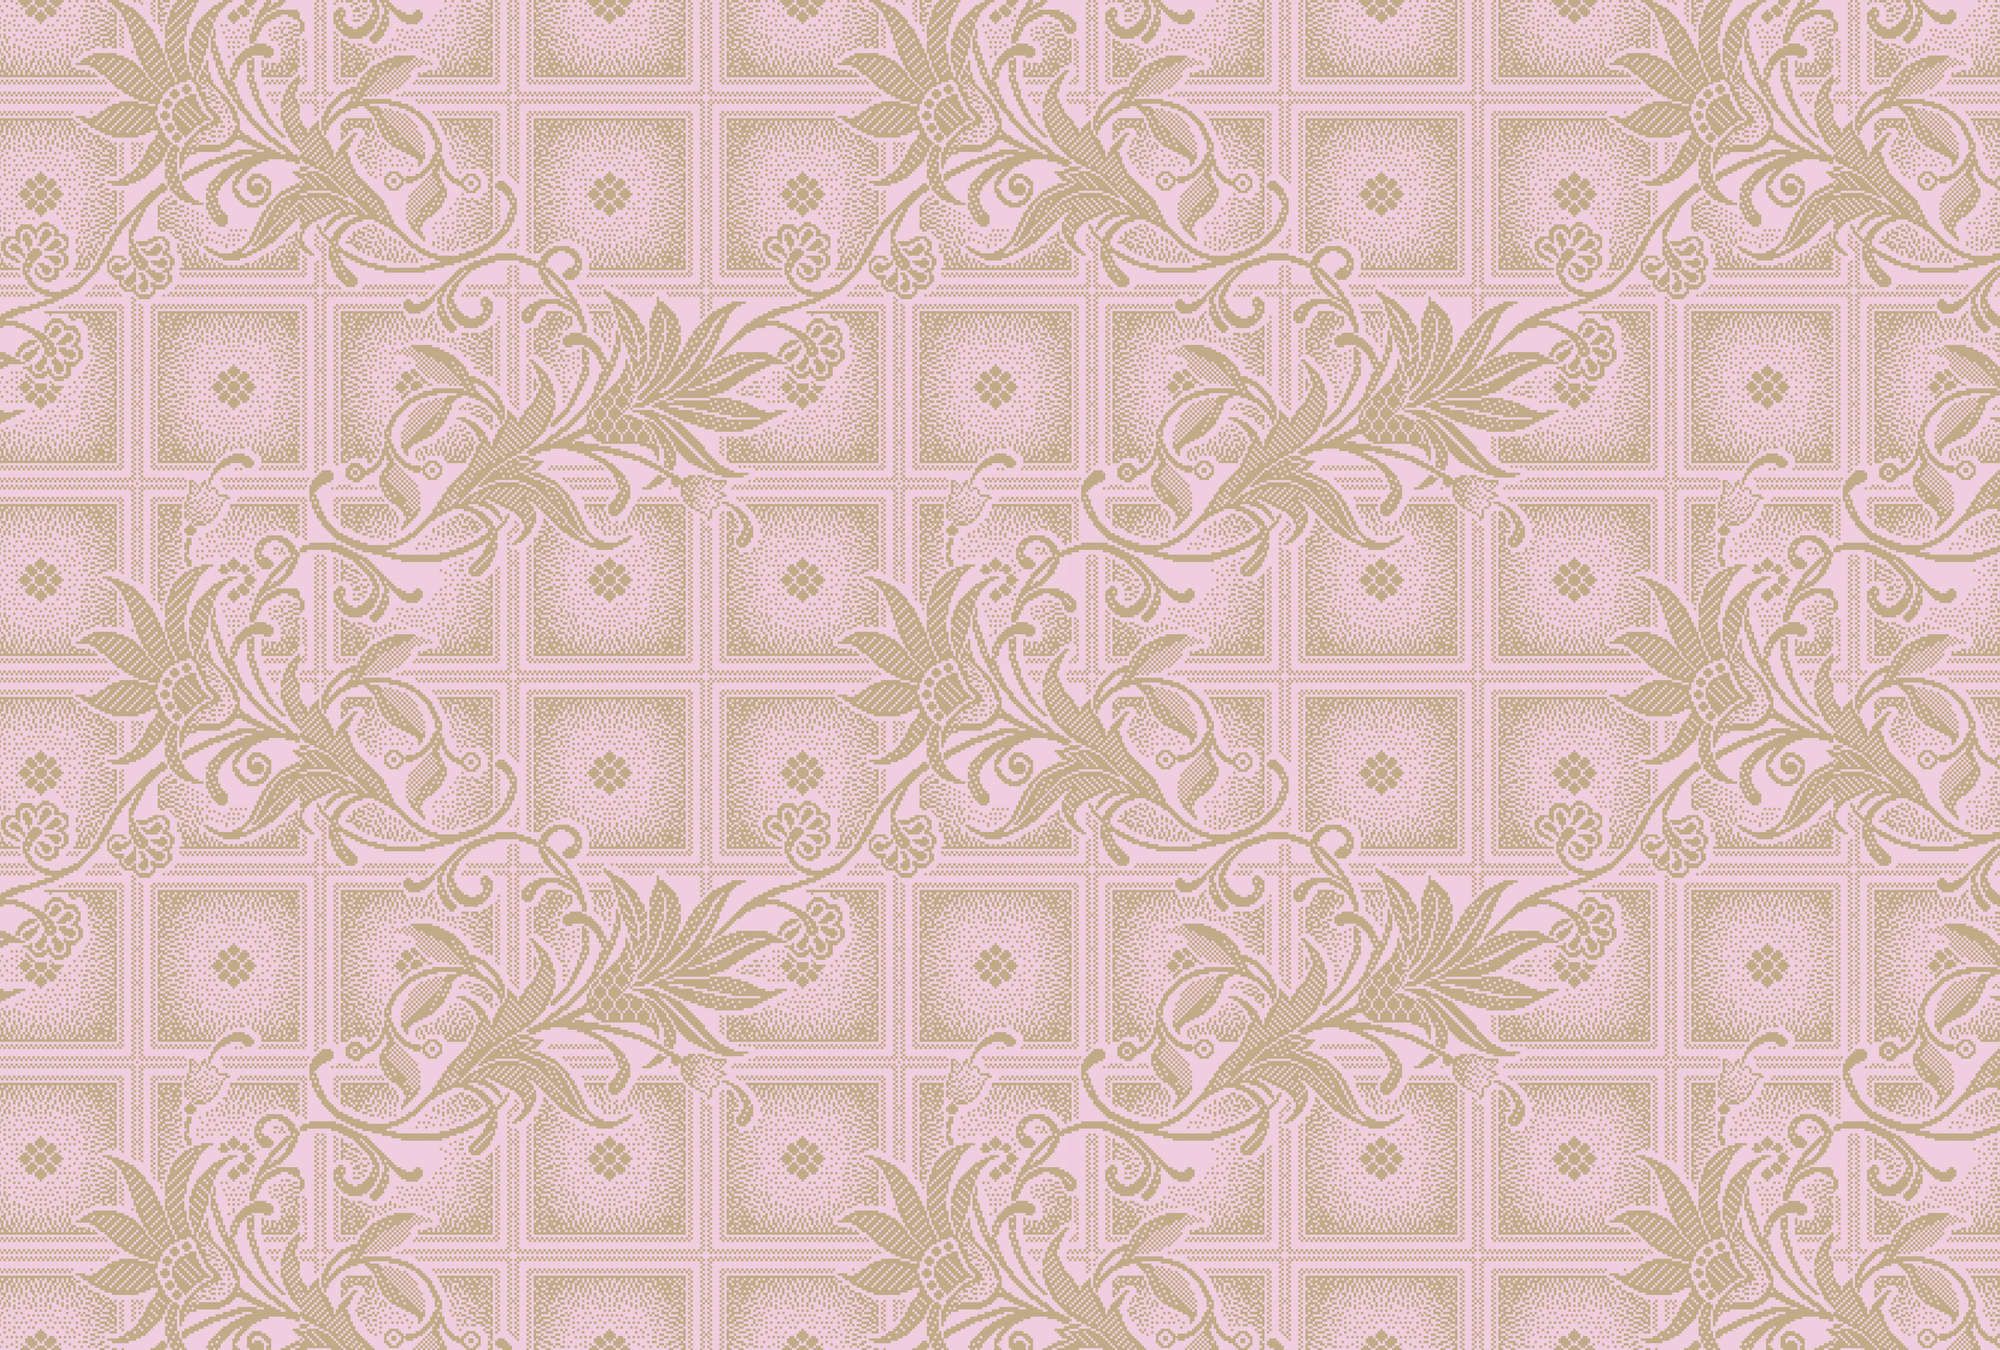             papier peint en papier »vivian« - Carrés de style pixel avec fleurs - rose | Intissé lisse, légèrement nacré
        